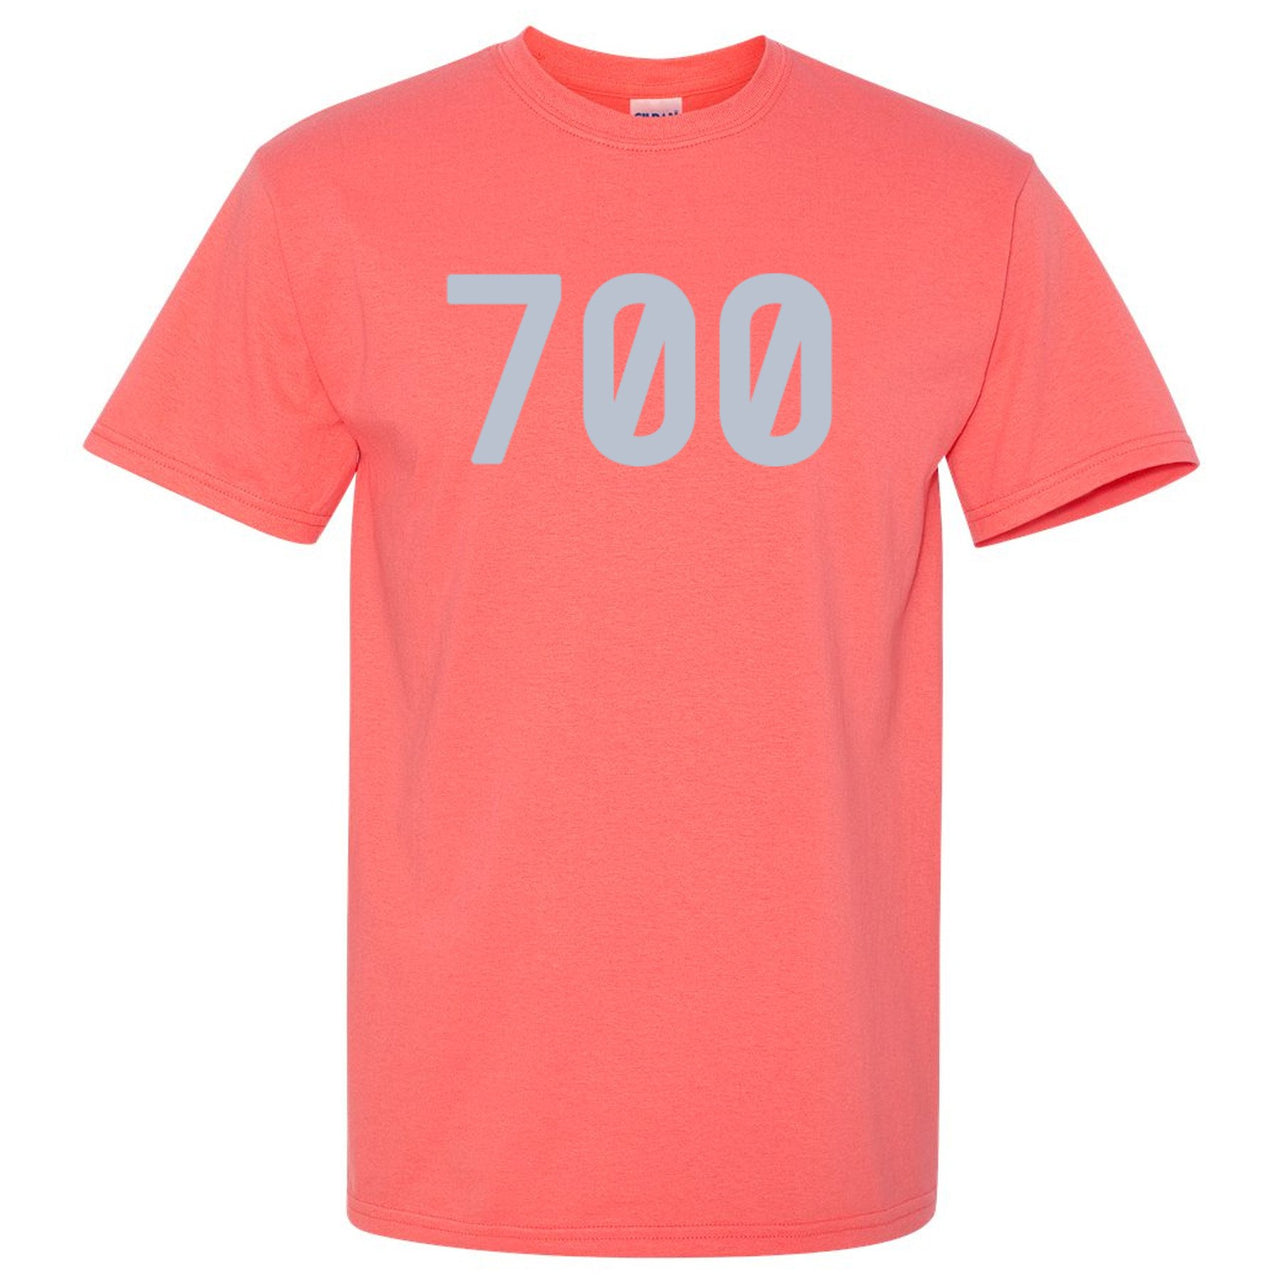 Inertia 700s T Shirt | 700, Coral Silk